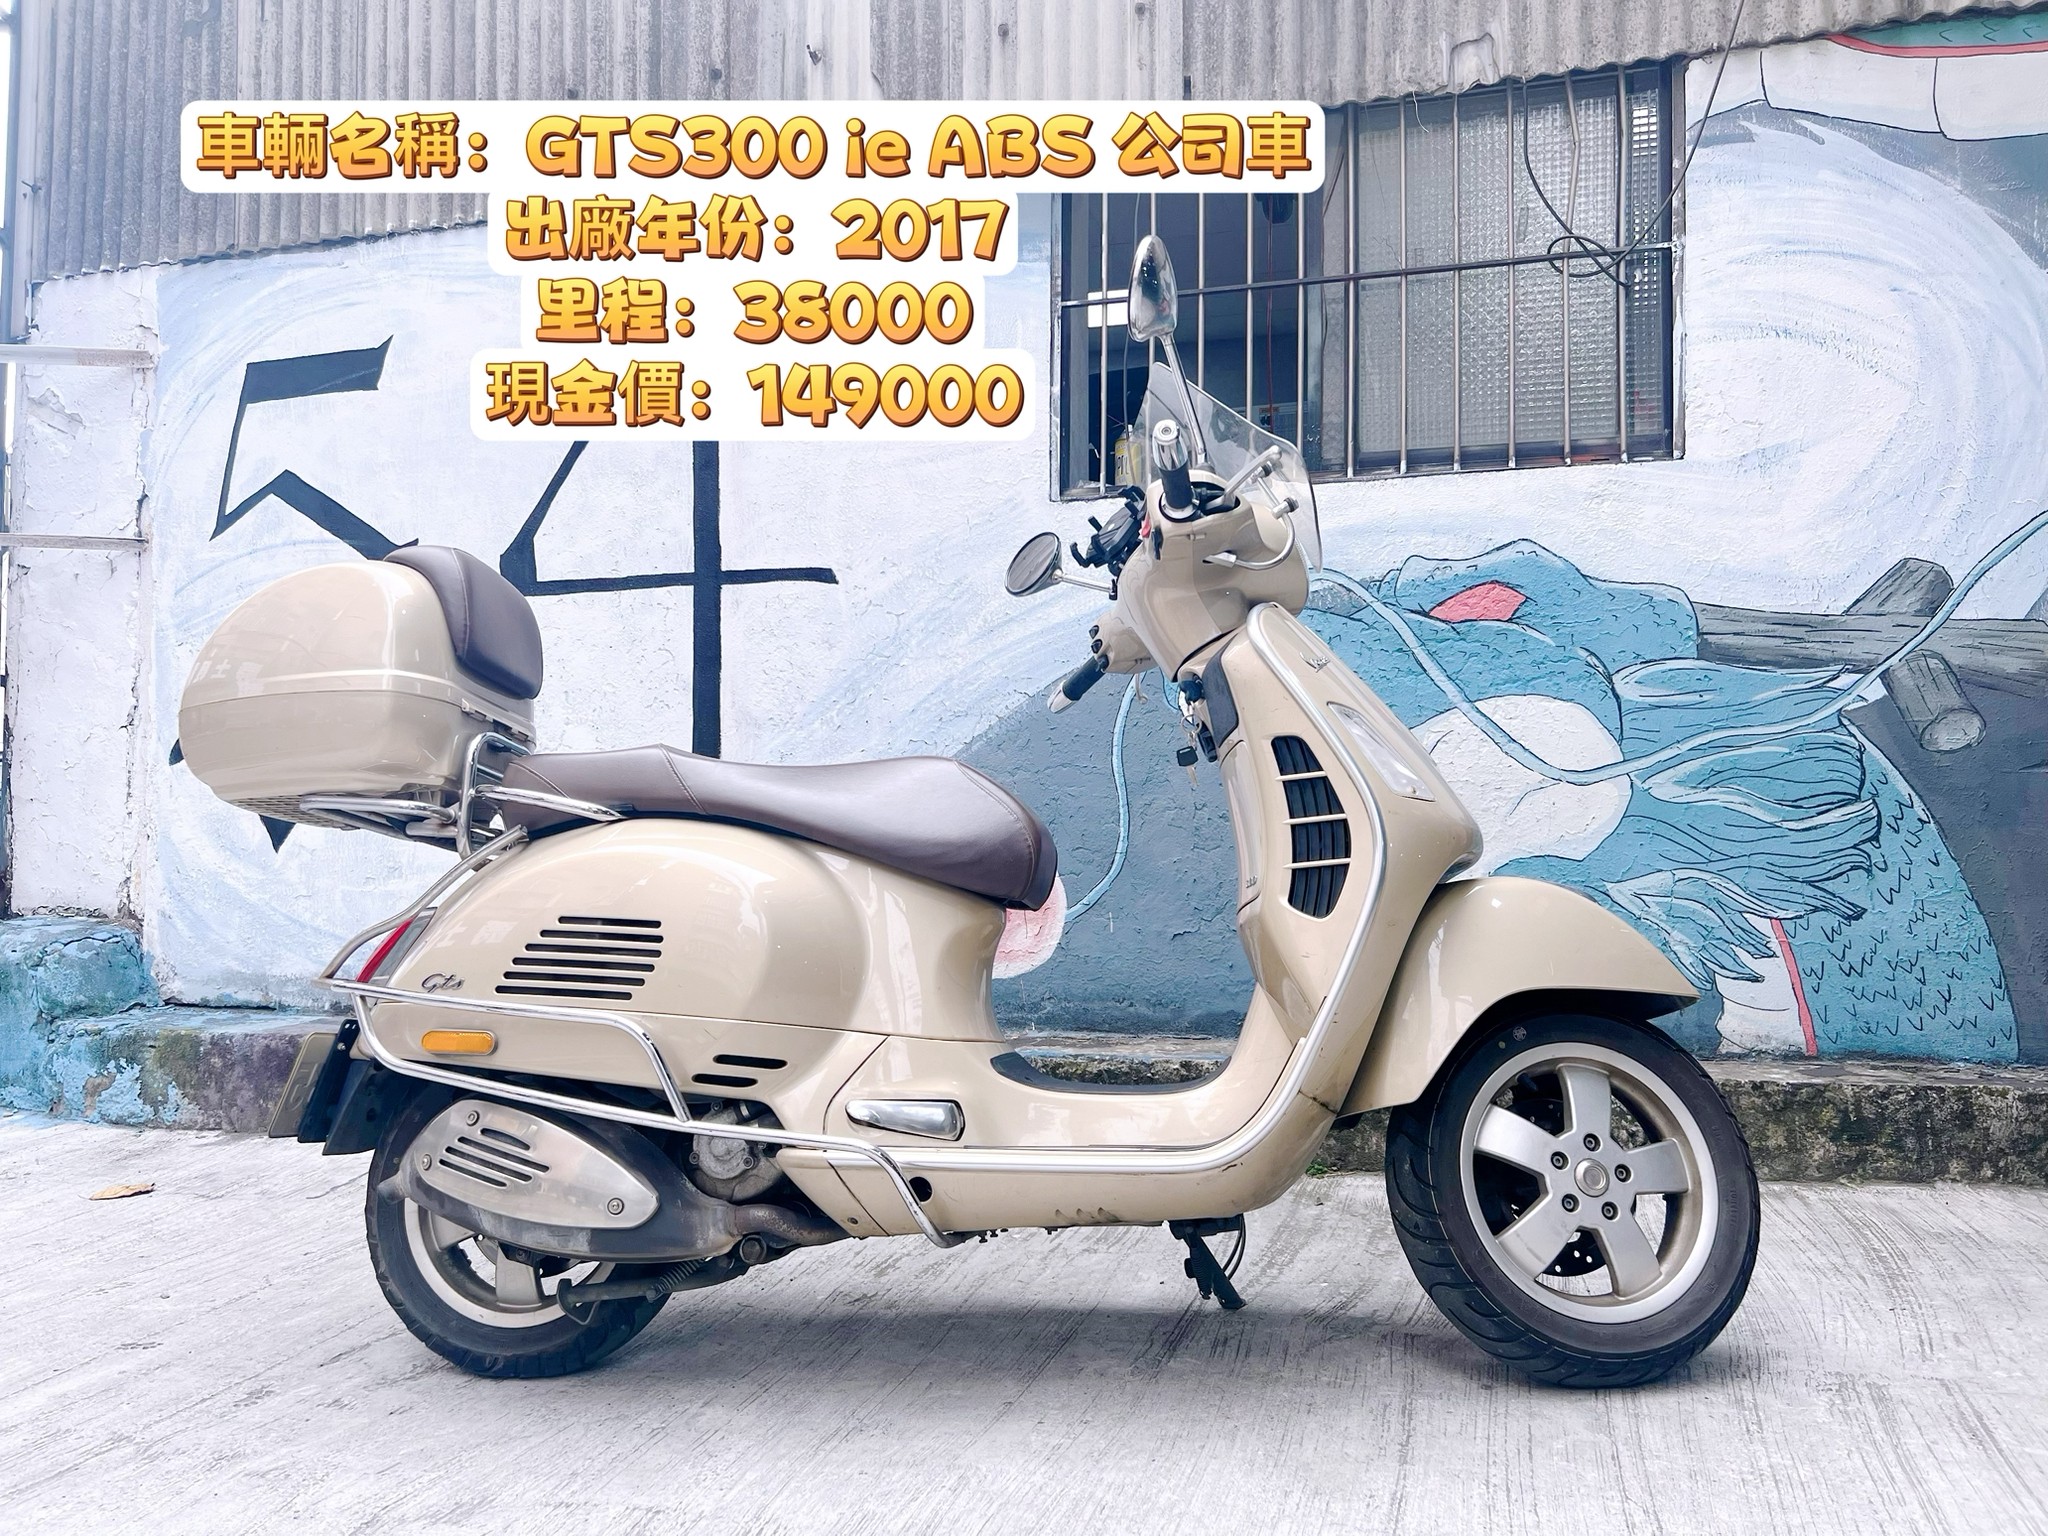 【大蔡】VESPA GTS300ie - 「Webike-摩托車市」 偉士牌 GTS300 ie ABS 公司車